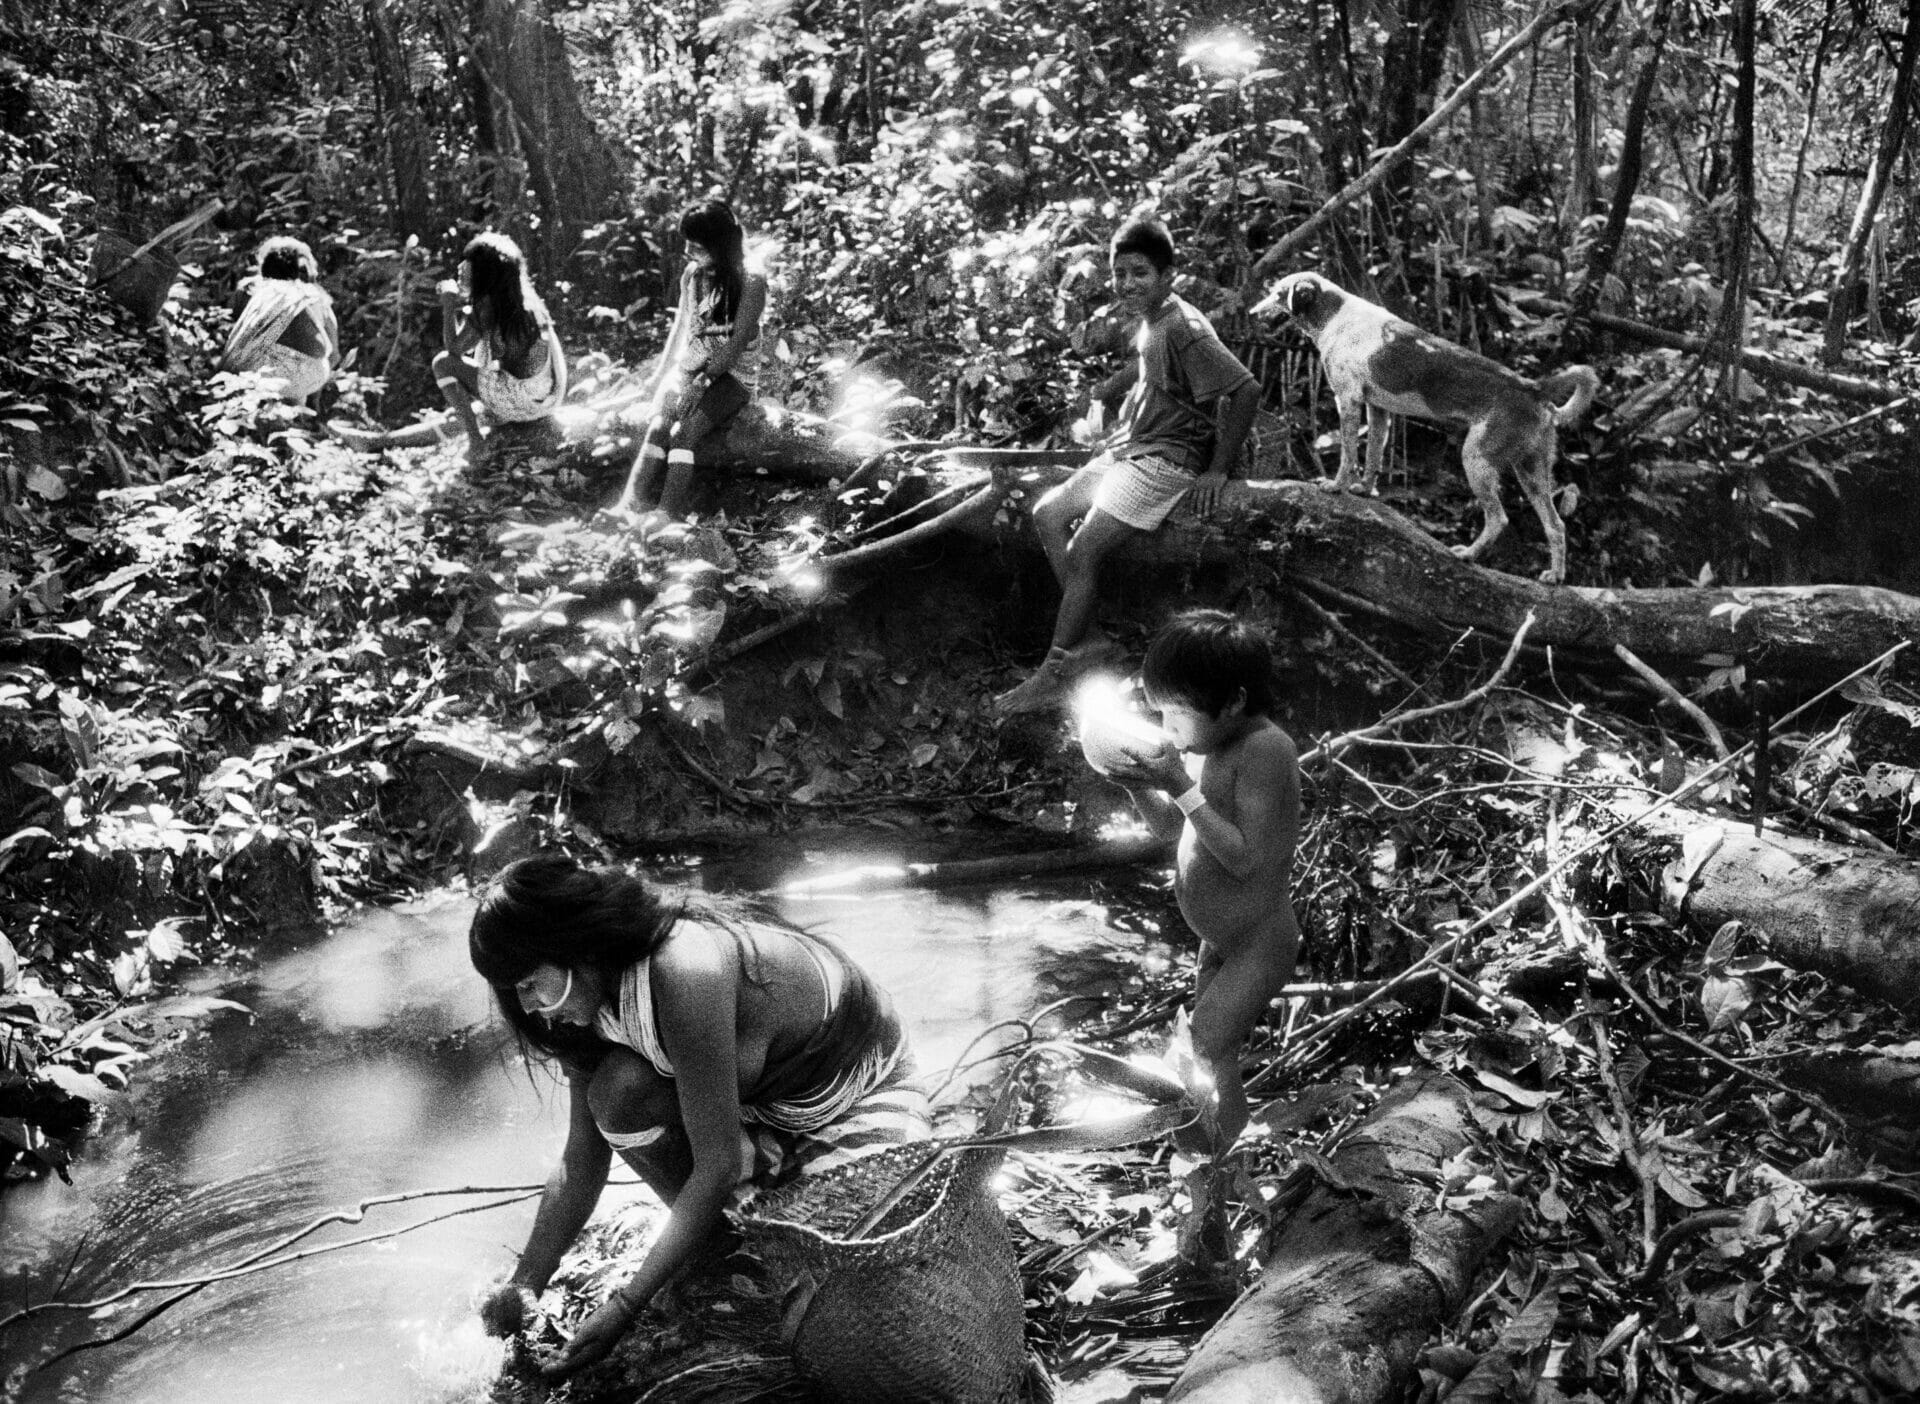 Photograph of the indigenous Marubo taken by Salgado in 1998 in Brazil